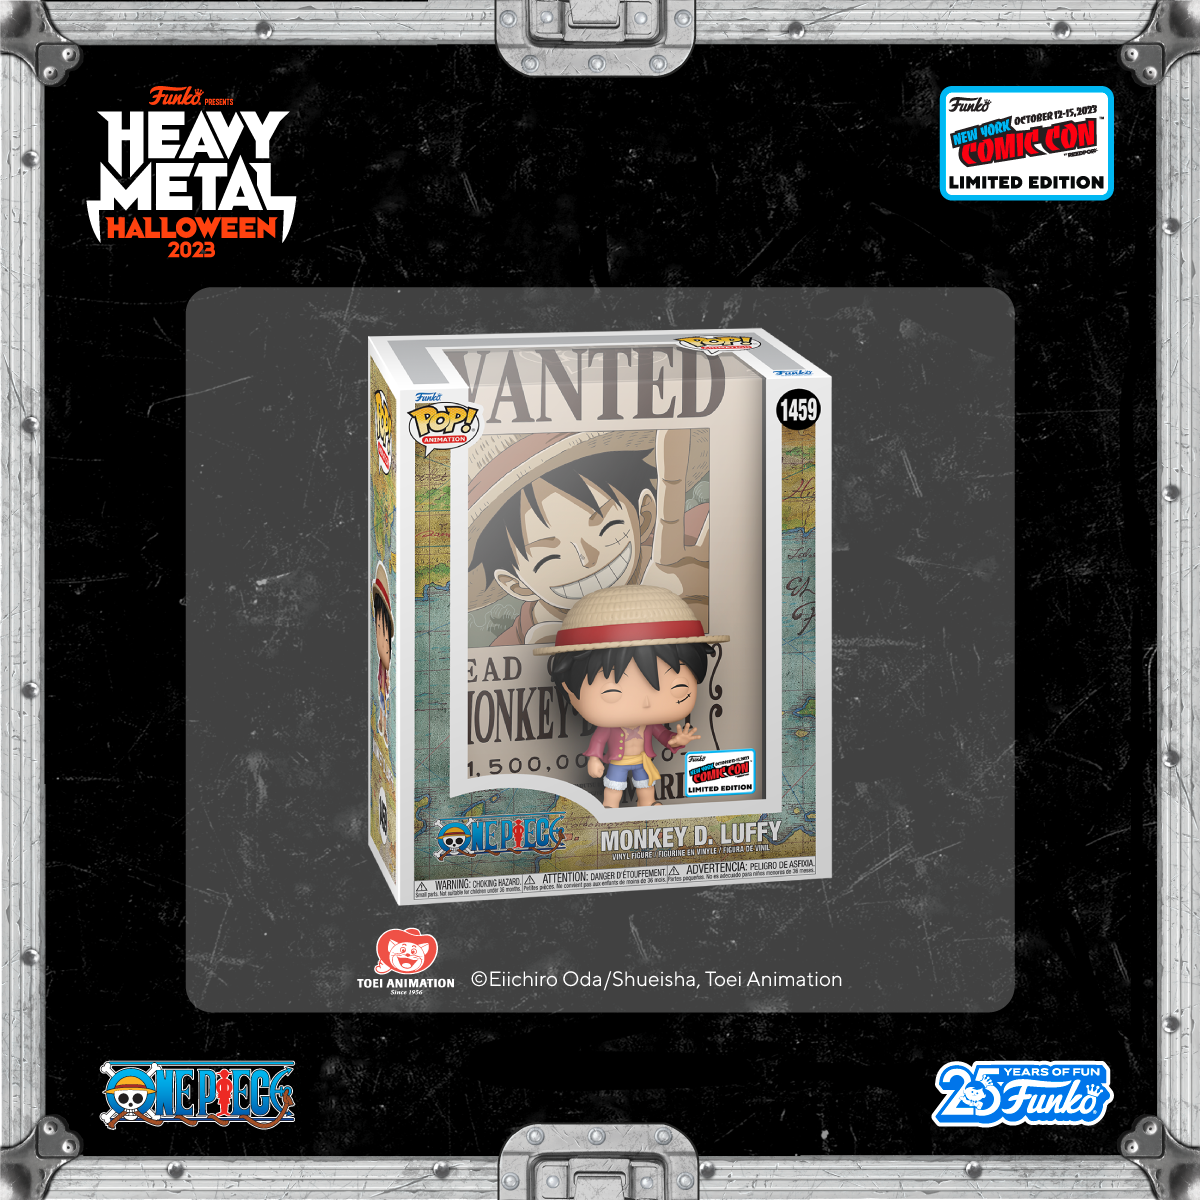 ¡Pop! Mono D. Luffy se para frente a un póster de recompensas en este objeto de colección exclusivo de la Comic Con de Nueva York.